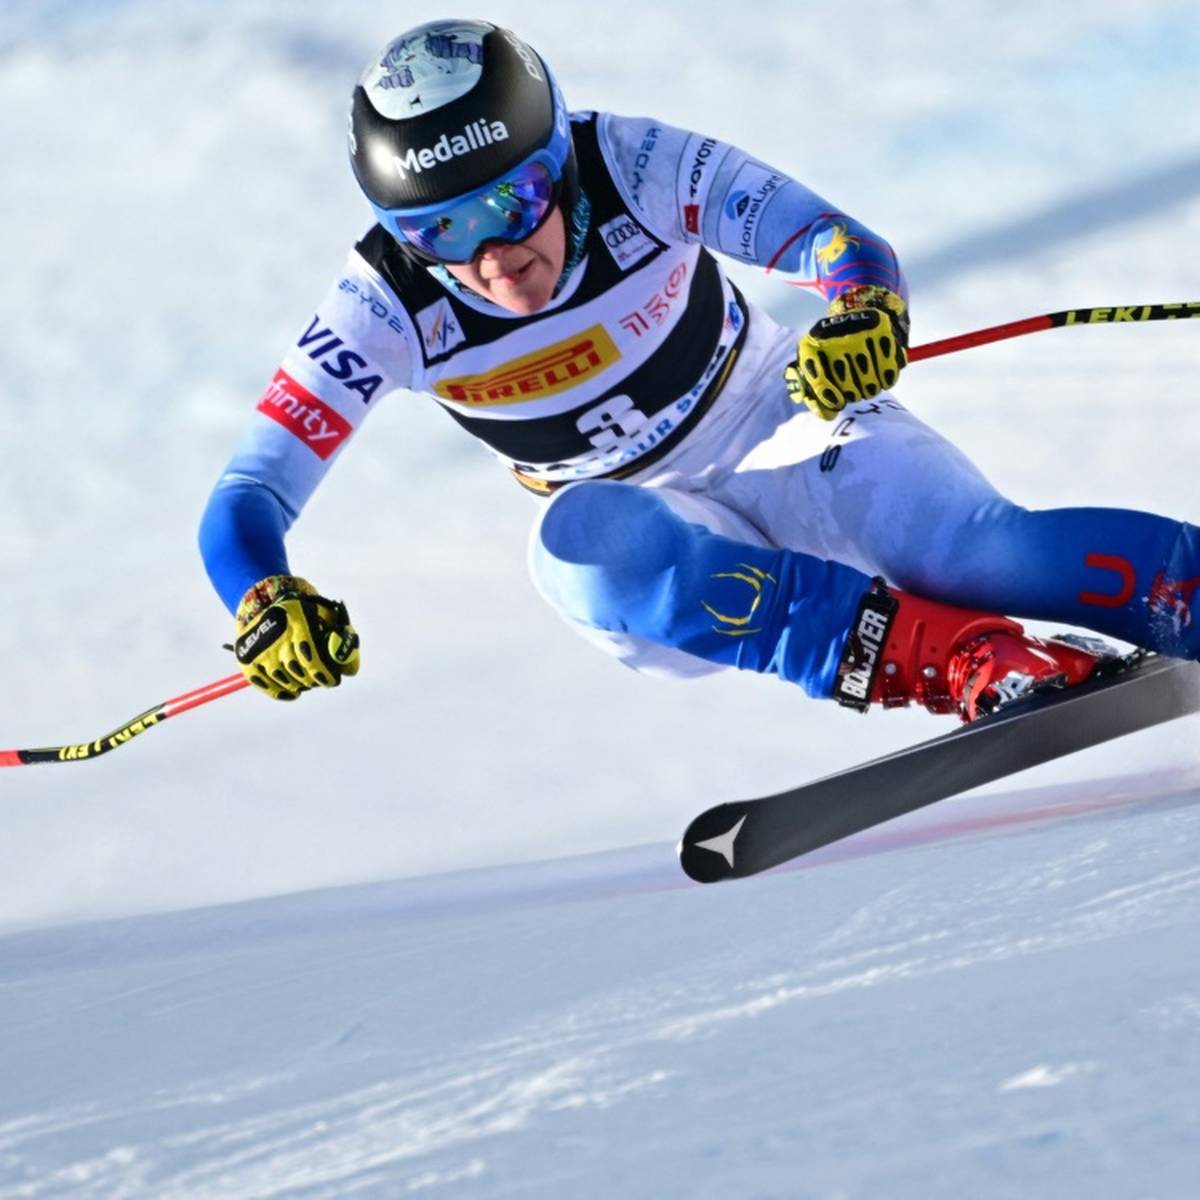 Die amerikanische Skirennläuferin Breezy Johnson hat ihre Teilnahme an den Olympischen Winterspielen in Peking (4. bis 20. Februar) abgesagt.